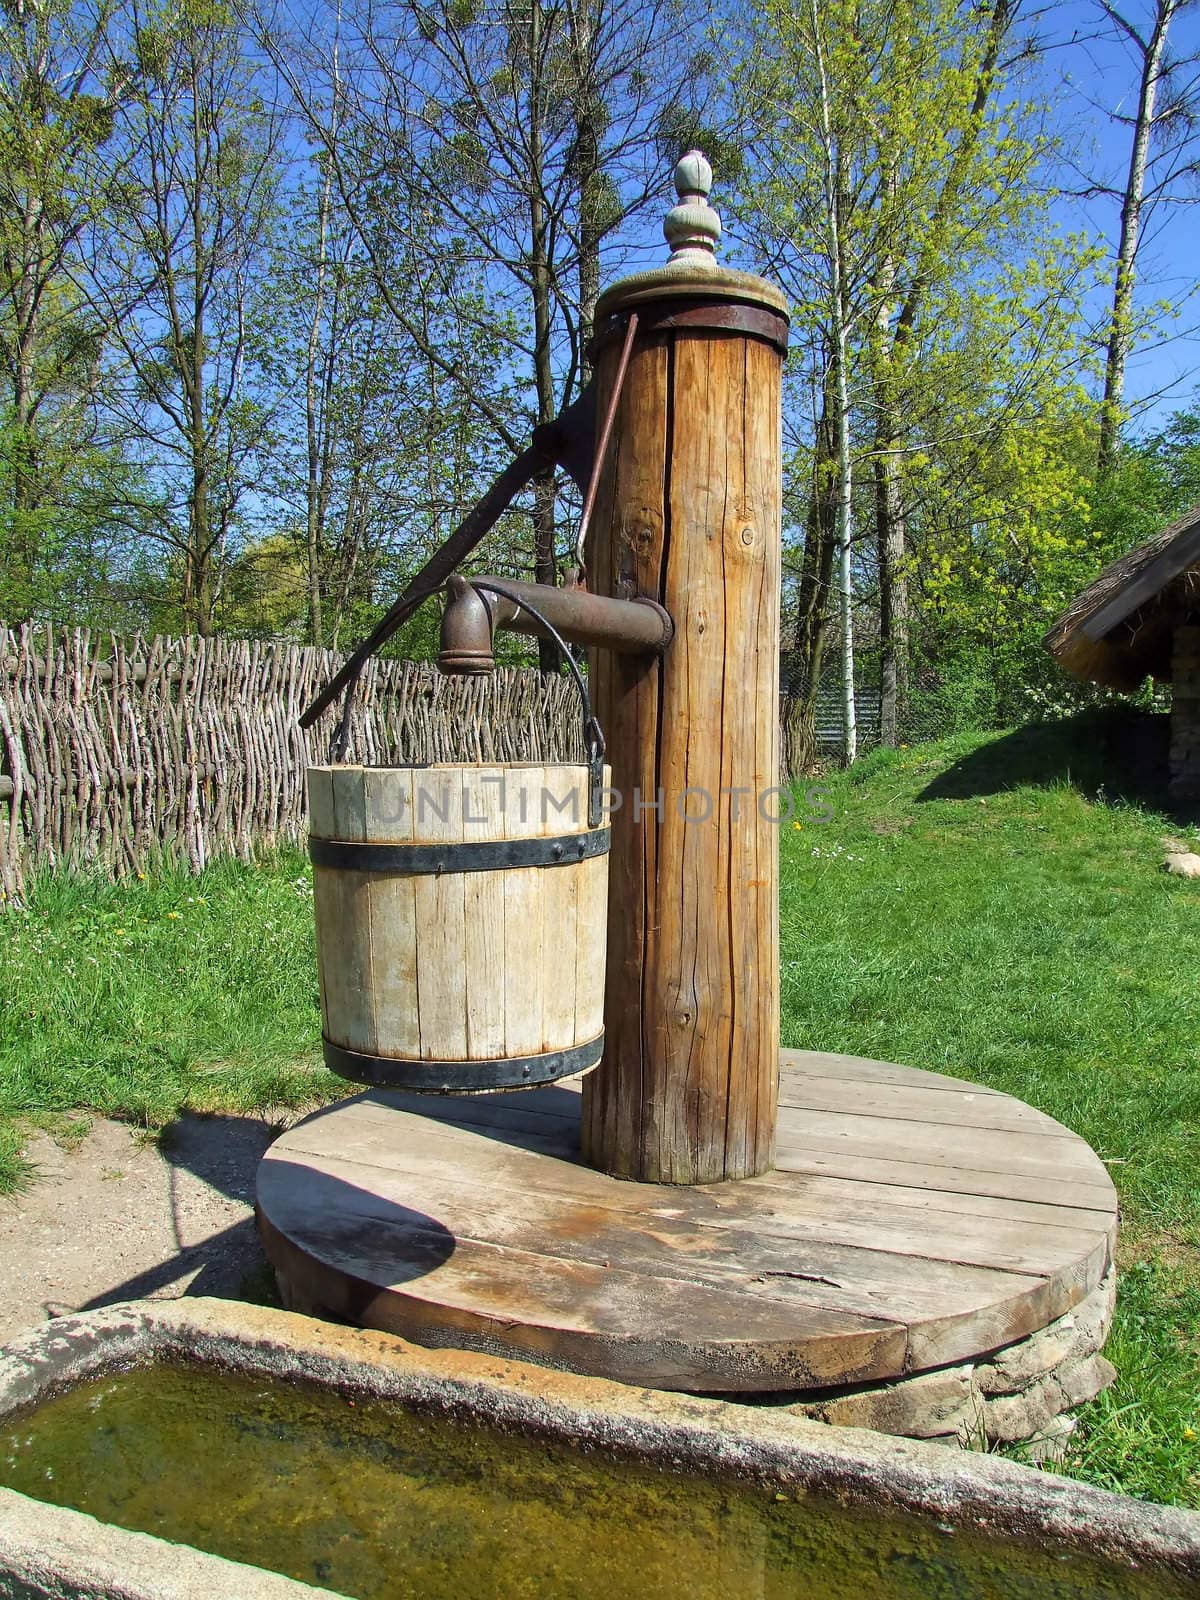 Old wooden pump in village, green grass around by anki21